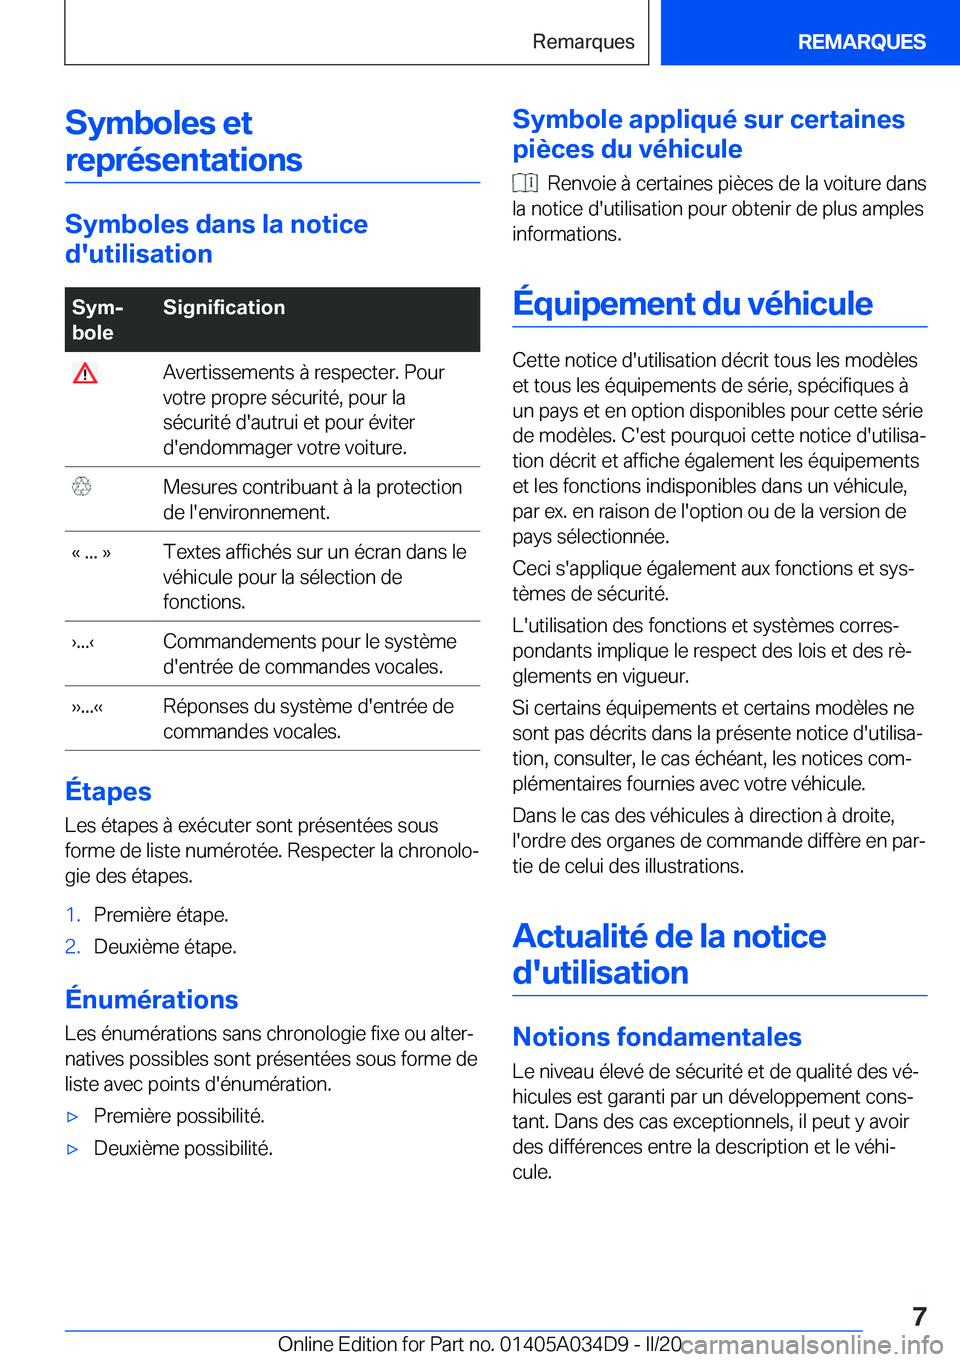 BMW X3 2020  Notices Demploi (in French) �S�y�m�b�o�l�e�s��e�t�r�e�p�r�é�s�e�n�t�a�t�i�o�n�s
�S�y�m�b�o�l�e�s��d�a�n�s��l�a��n�o�t�i�c�e
�d�'�u�t�i�l�i�s�a�t�i�o�n
�S�y�mj
�b�o�l�e�S�i�g�n�i�f�i�c�a�t�i�o�n��A�v�e�r�t�i�s�s�e�m�e�